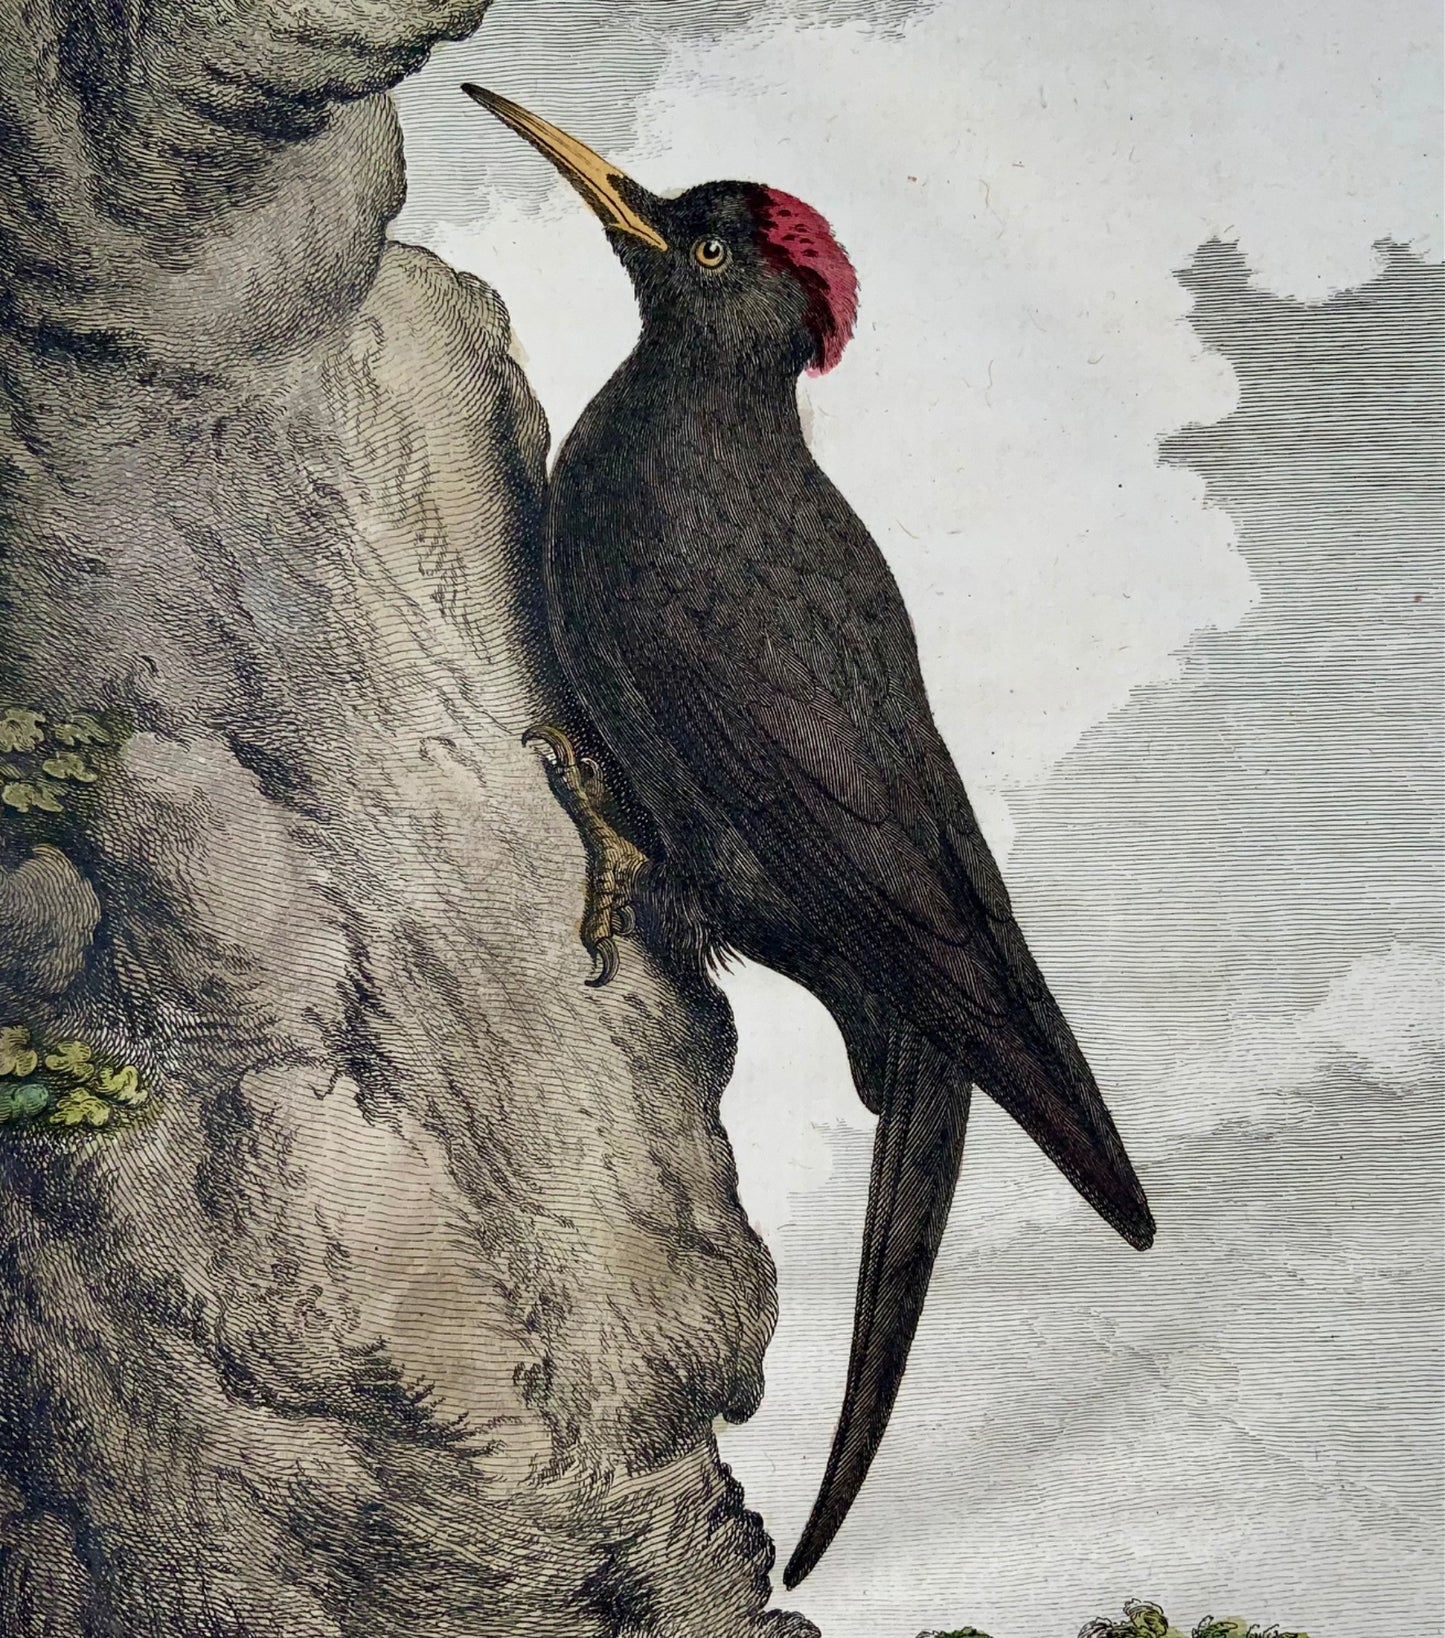 1771 Pic Noir, De Seve, ornithologie, édition grand in-4to, gravure 